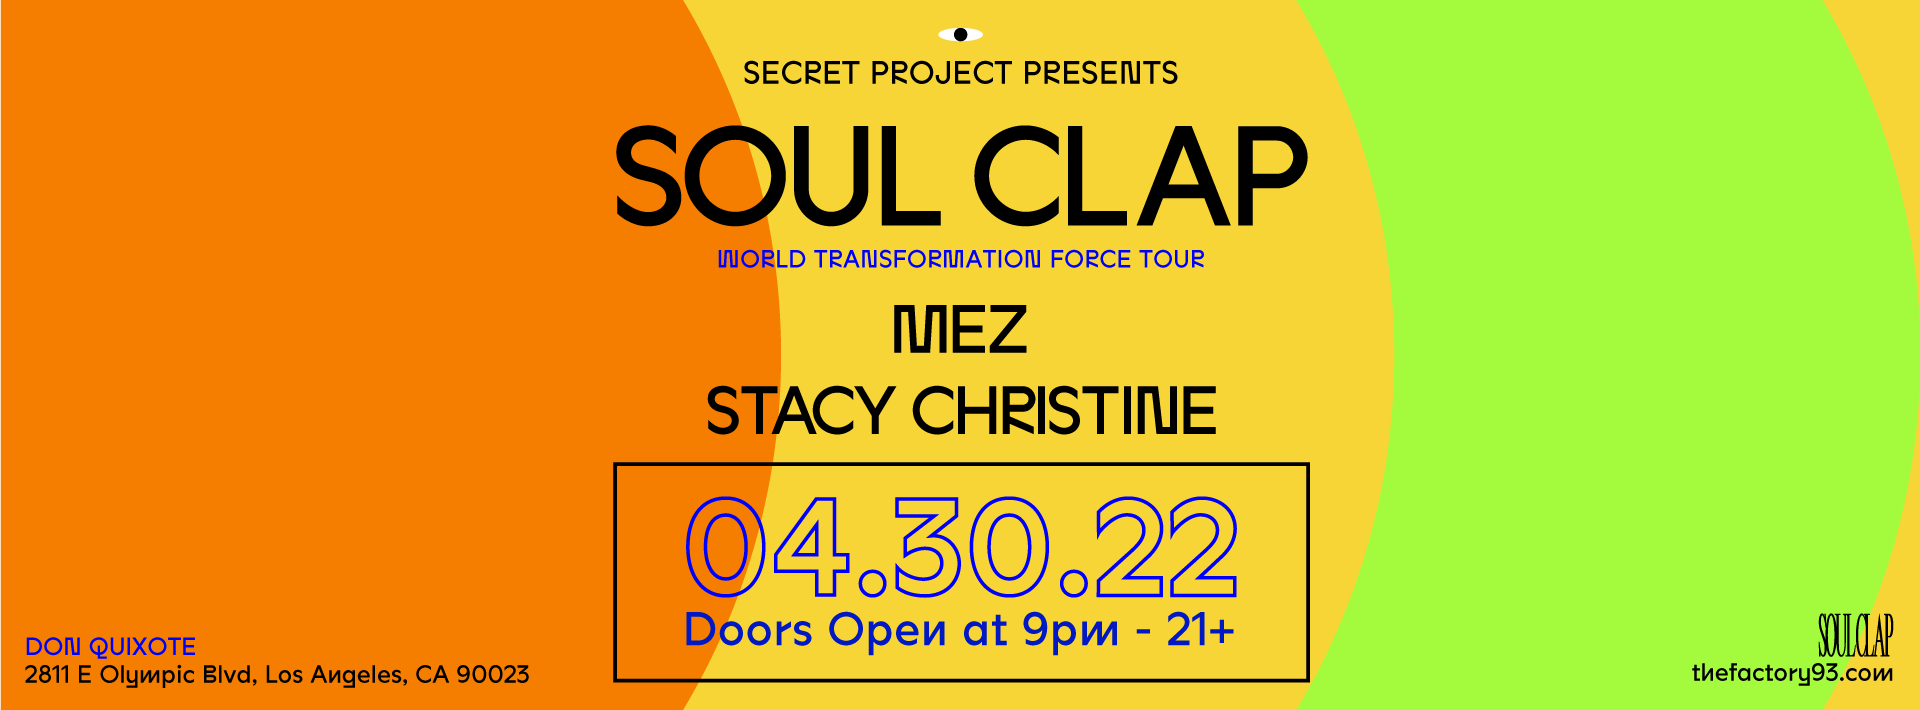 Secret Project presents Soul Clap